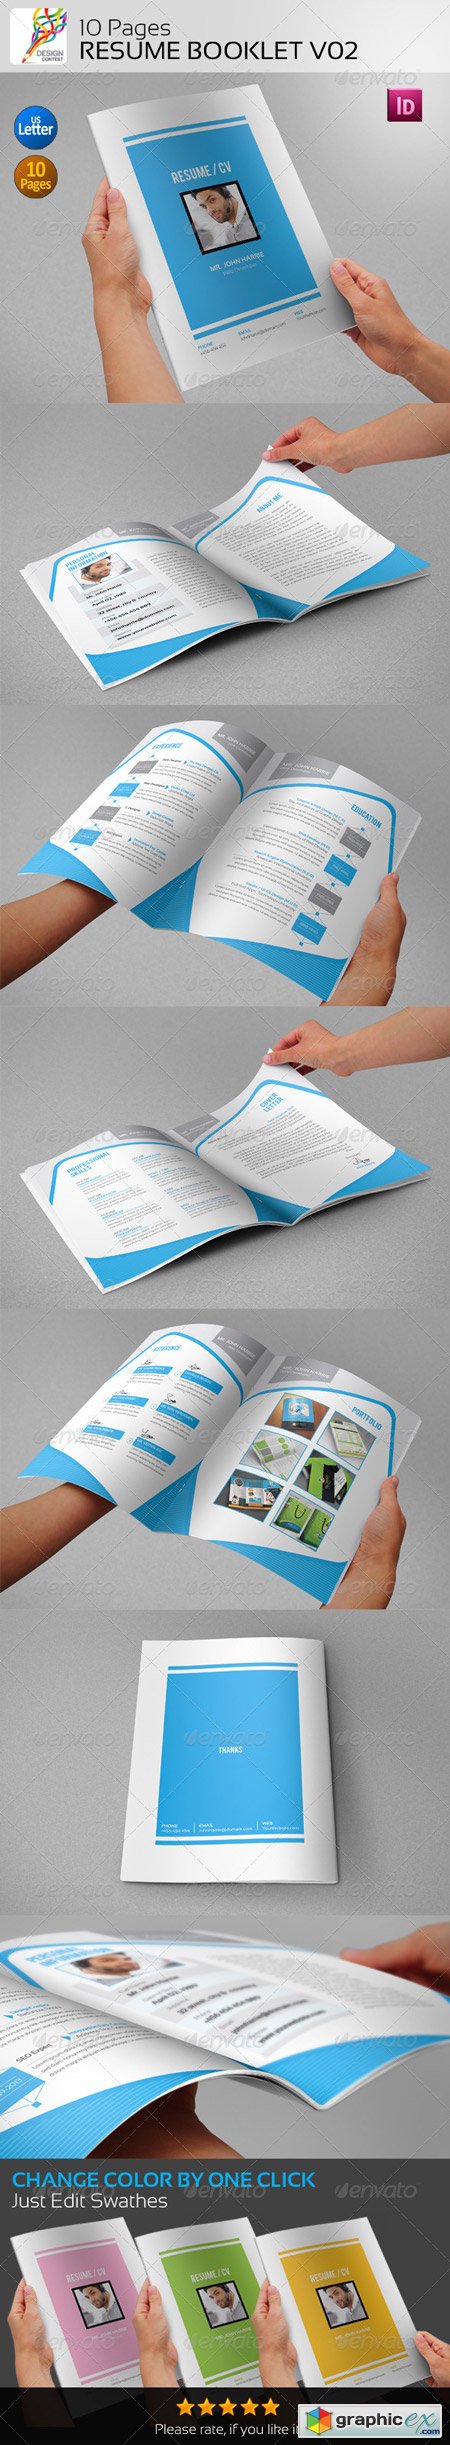 10 Pages Resume Booklet V02